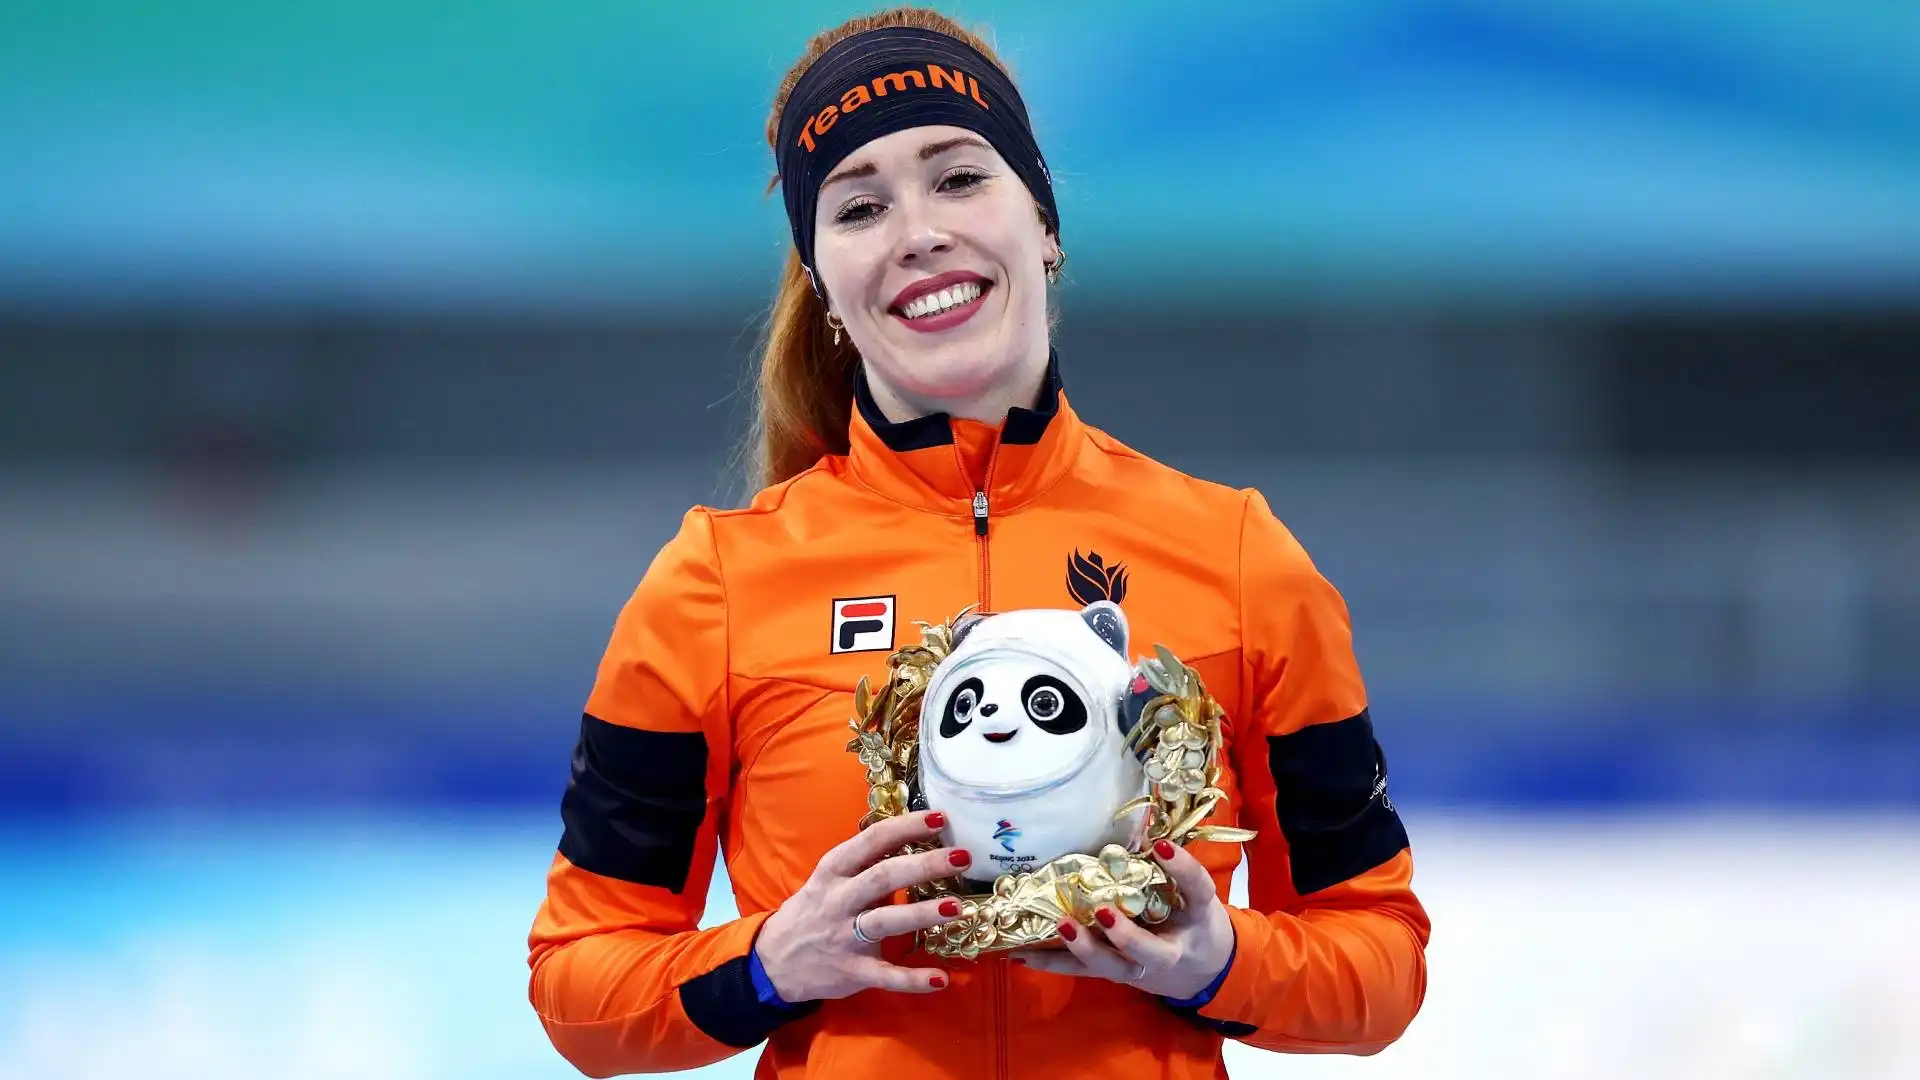 Infatti, in questa gara ha conquistato l'argento alle Olimpiadi invernali di Pyeongchang nel 2018